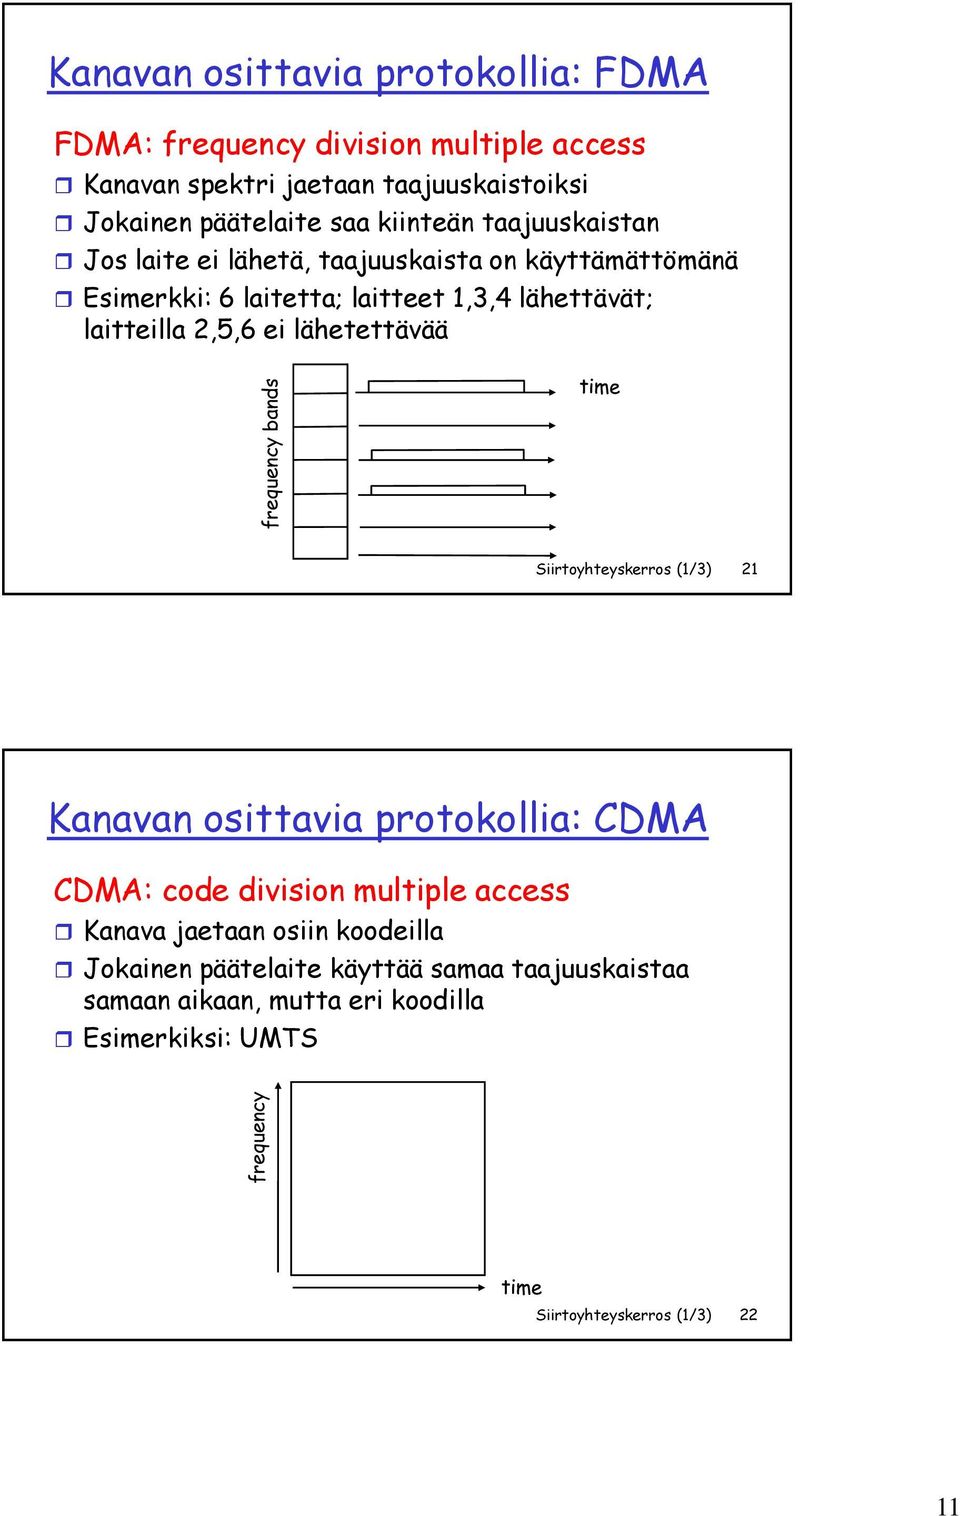 lähettävät; laitteilla 2,5,6 ei lähetettävää Siirtoyhteyskerros (1/3) 21 Kanavan osittavia protokollia: CDMA CDMA: code division multiple access